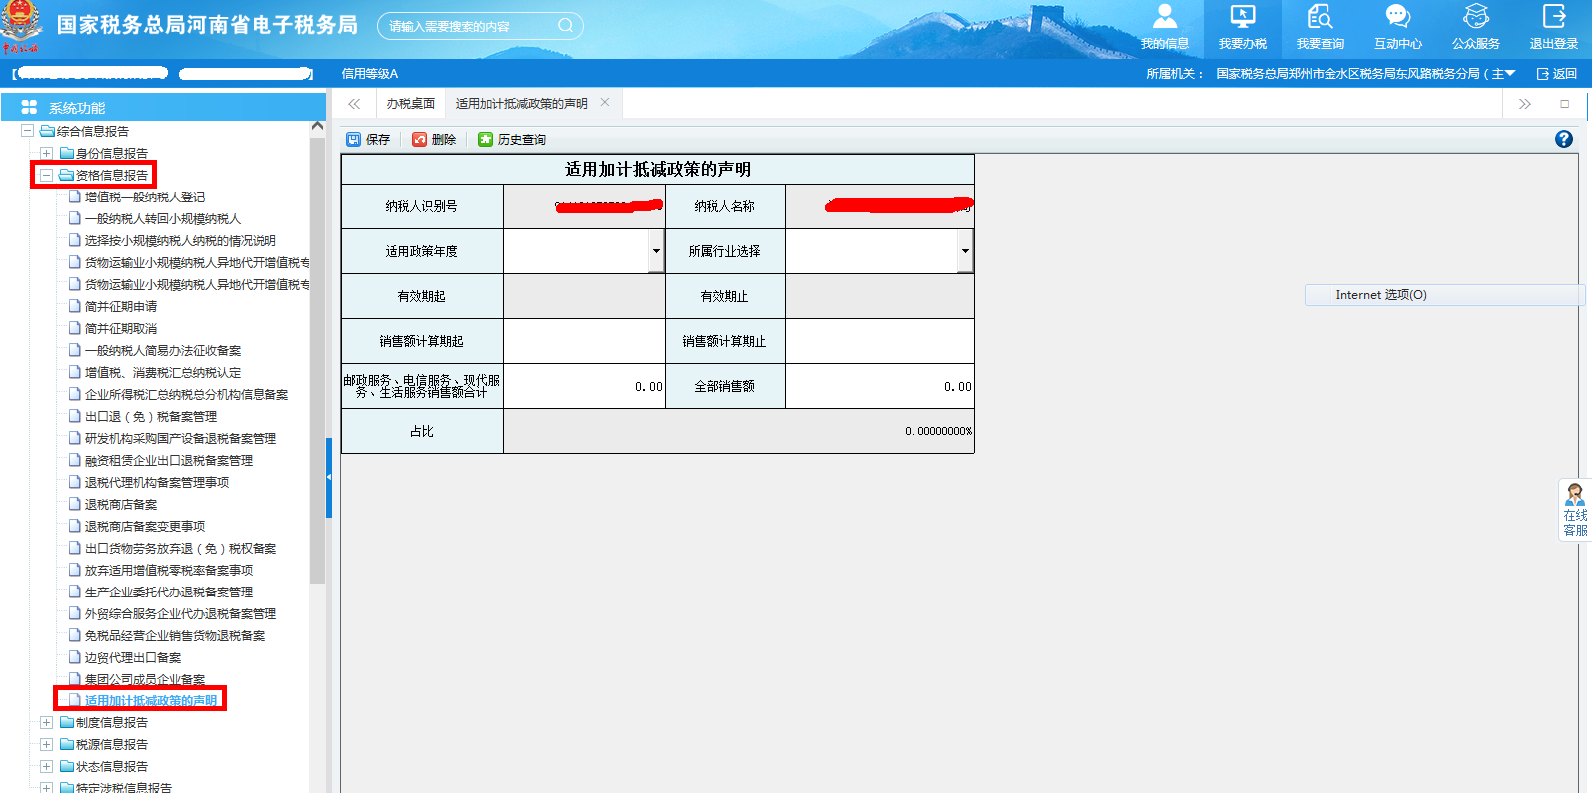 河南省电子税务局适用加计抵减政策的声明首页